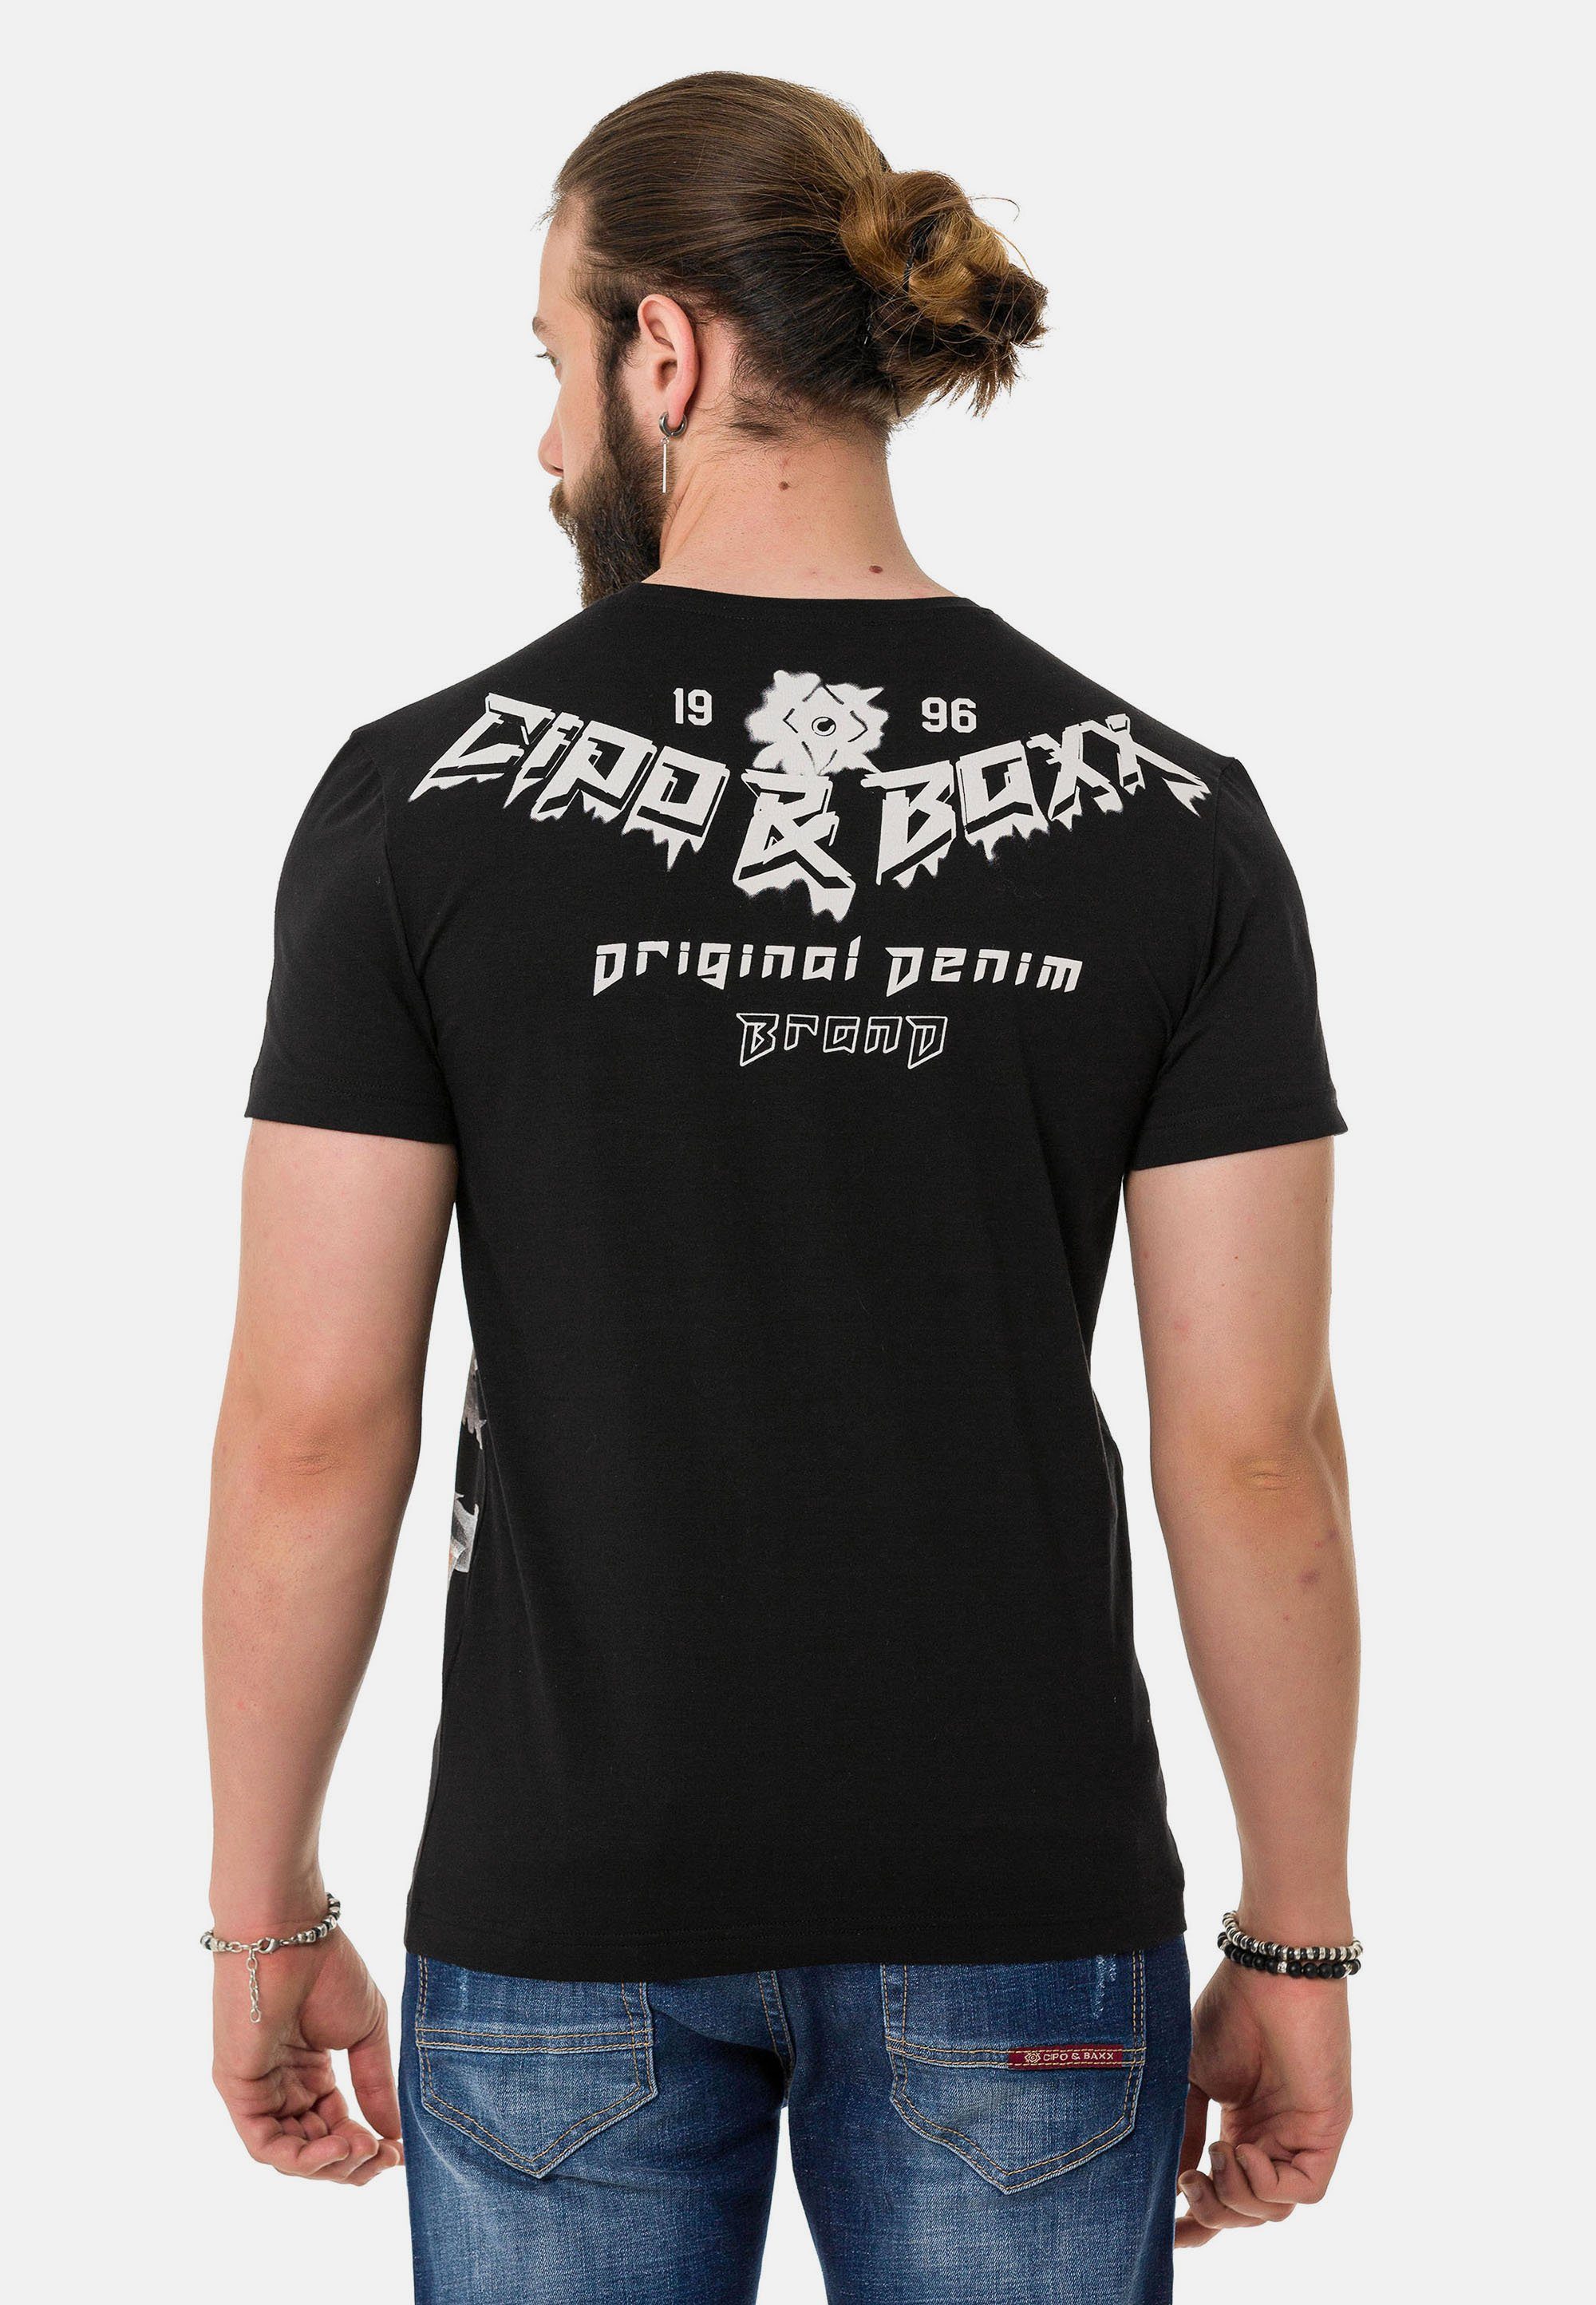 coolem Markenprint T-Shirt & Baxx schwarz mit Cipo